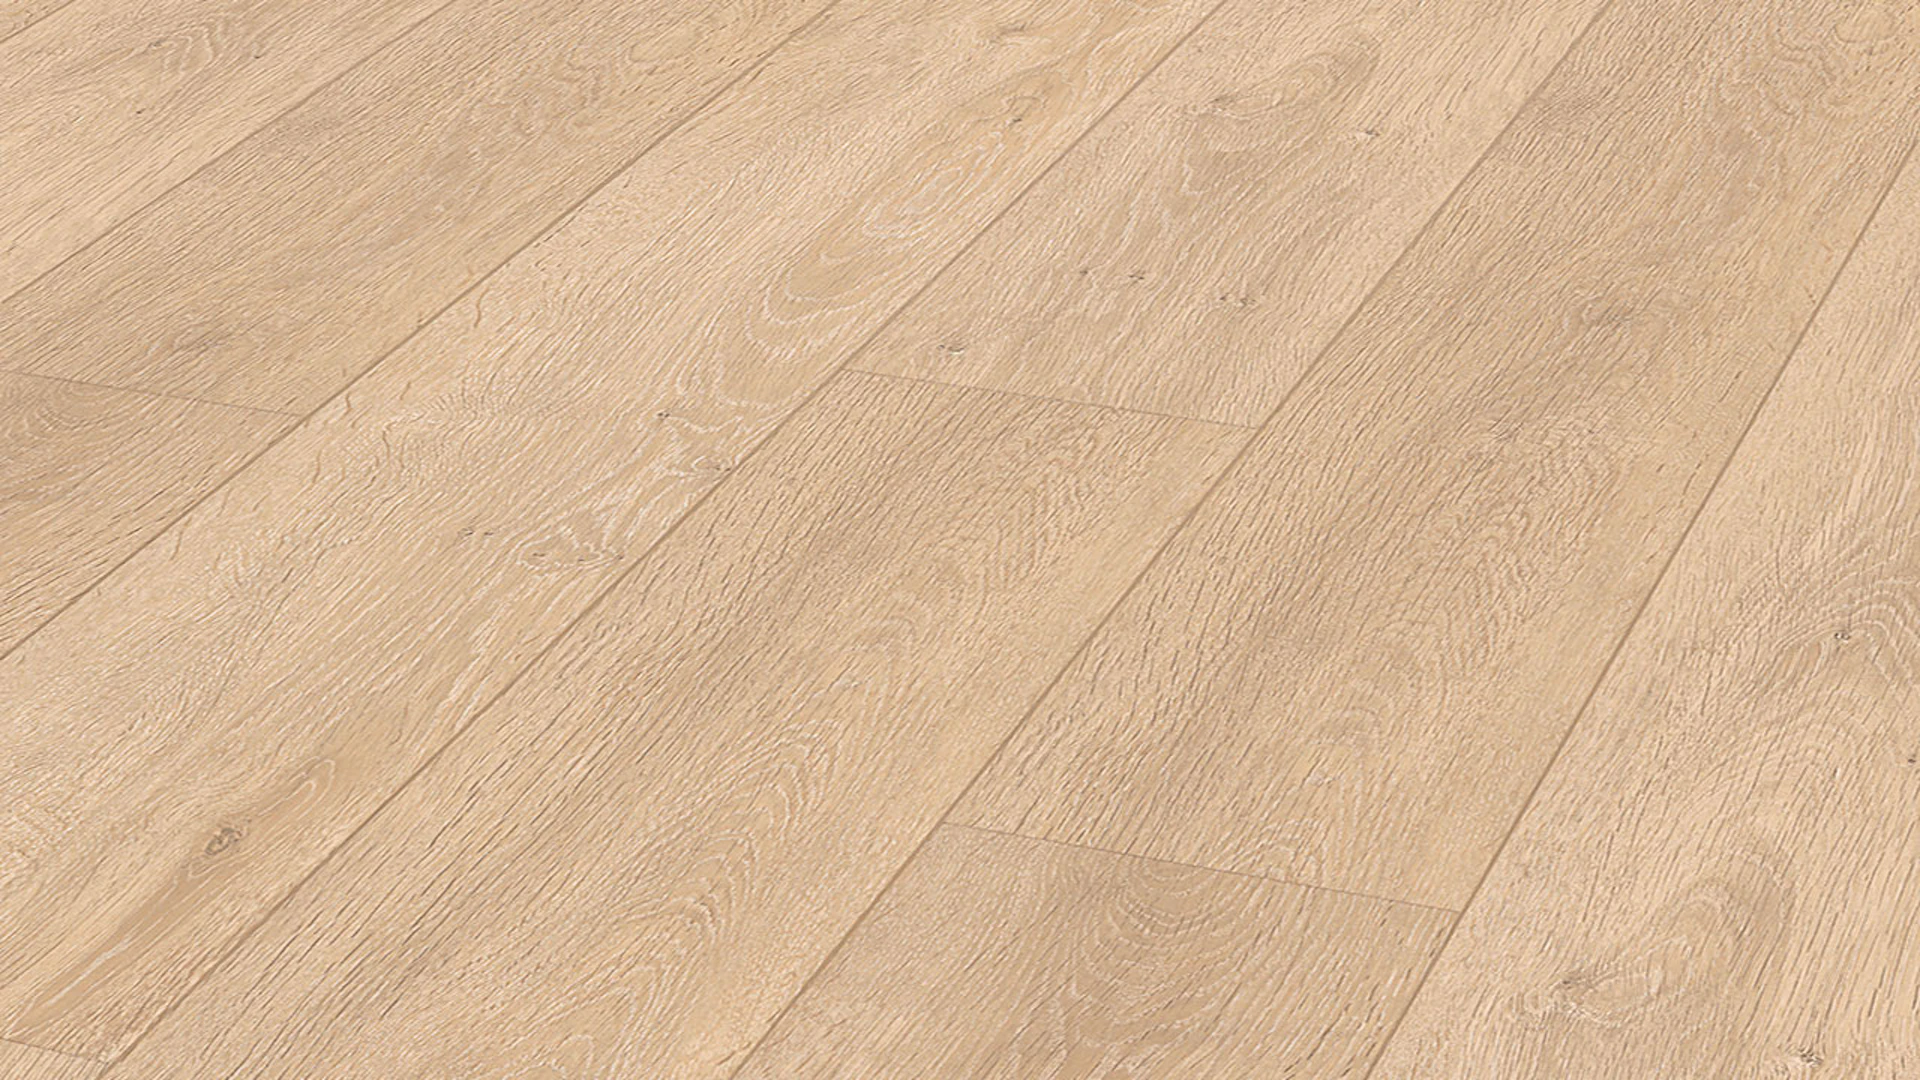 MEISTER Laminate flooring - MeisterDesign LD 150 Oak Taverna 6428 (600017-1288198-06428)